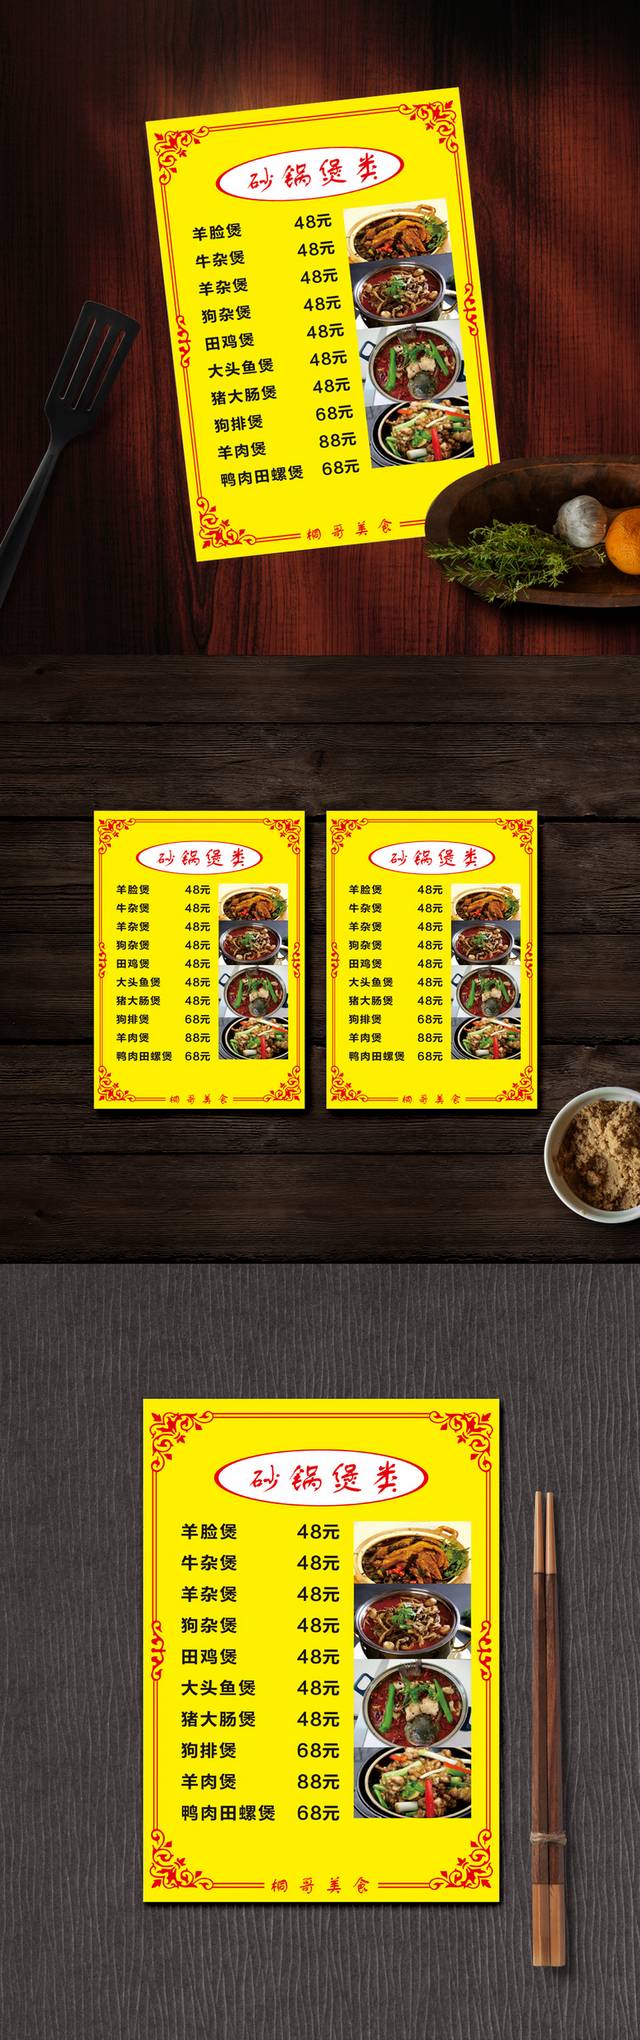 高清特色砂锅店菜单模板设计